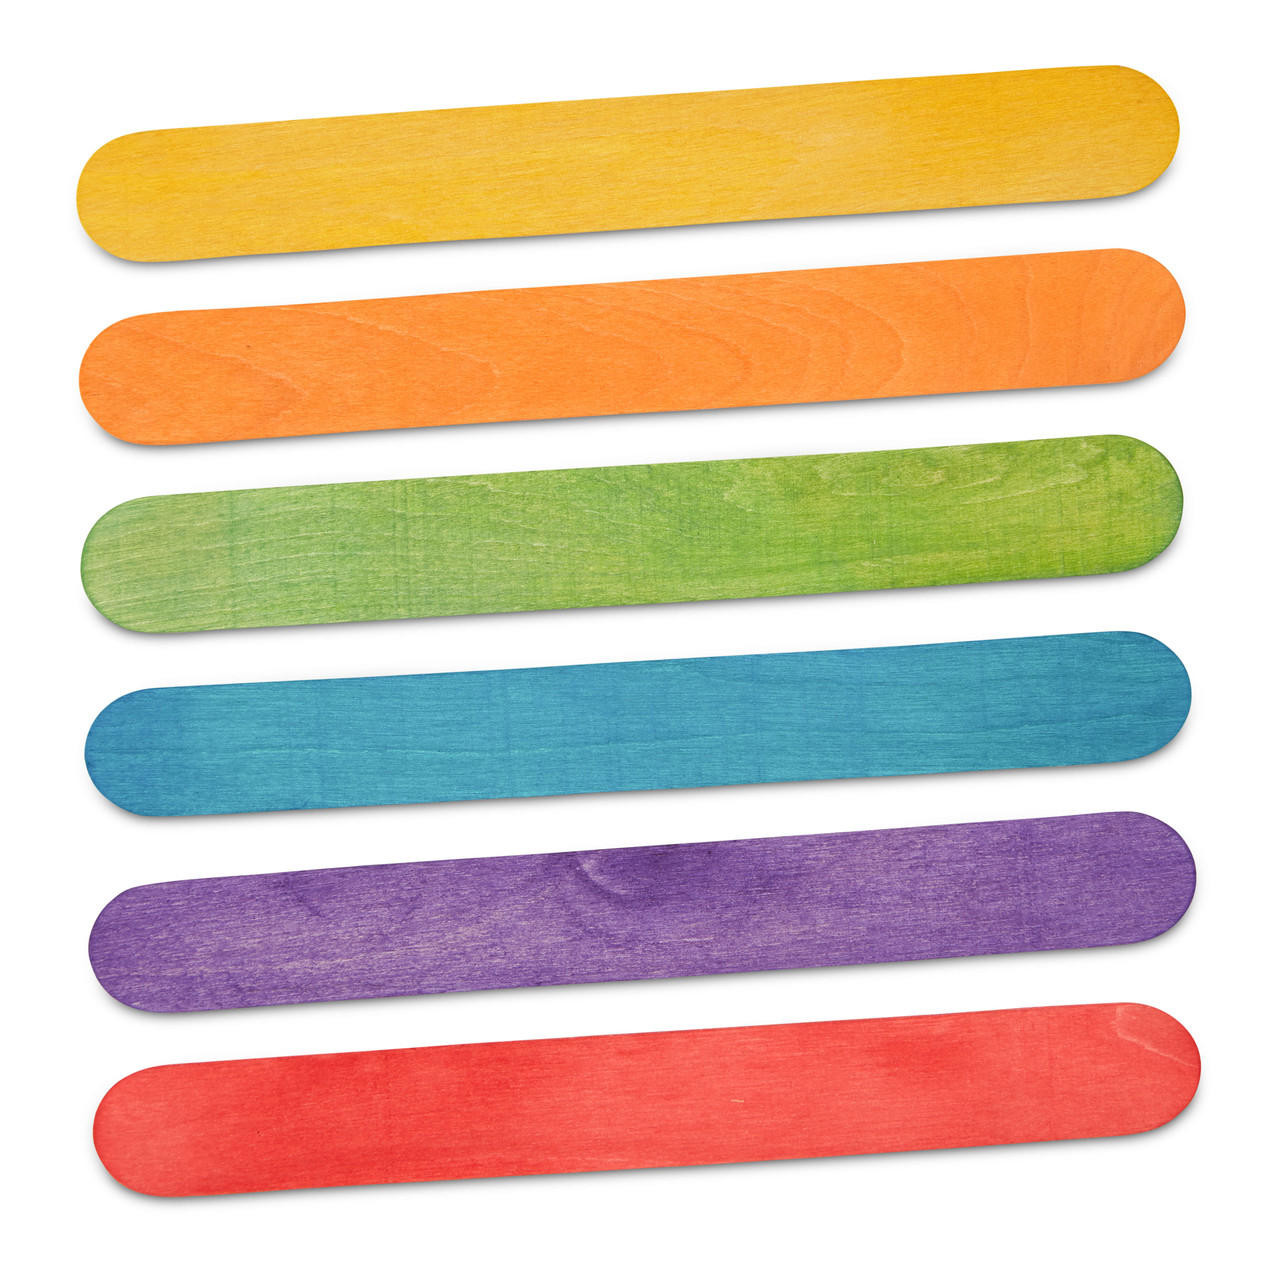  Okllen 1000 Pack Colored Craft Sticks, 6 Inch Wooden